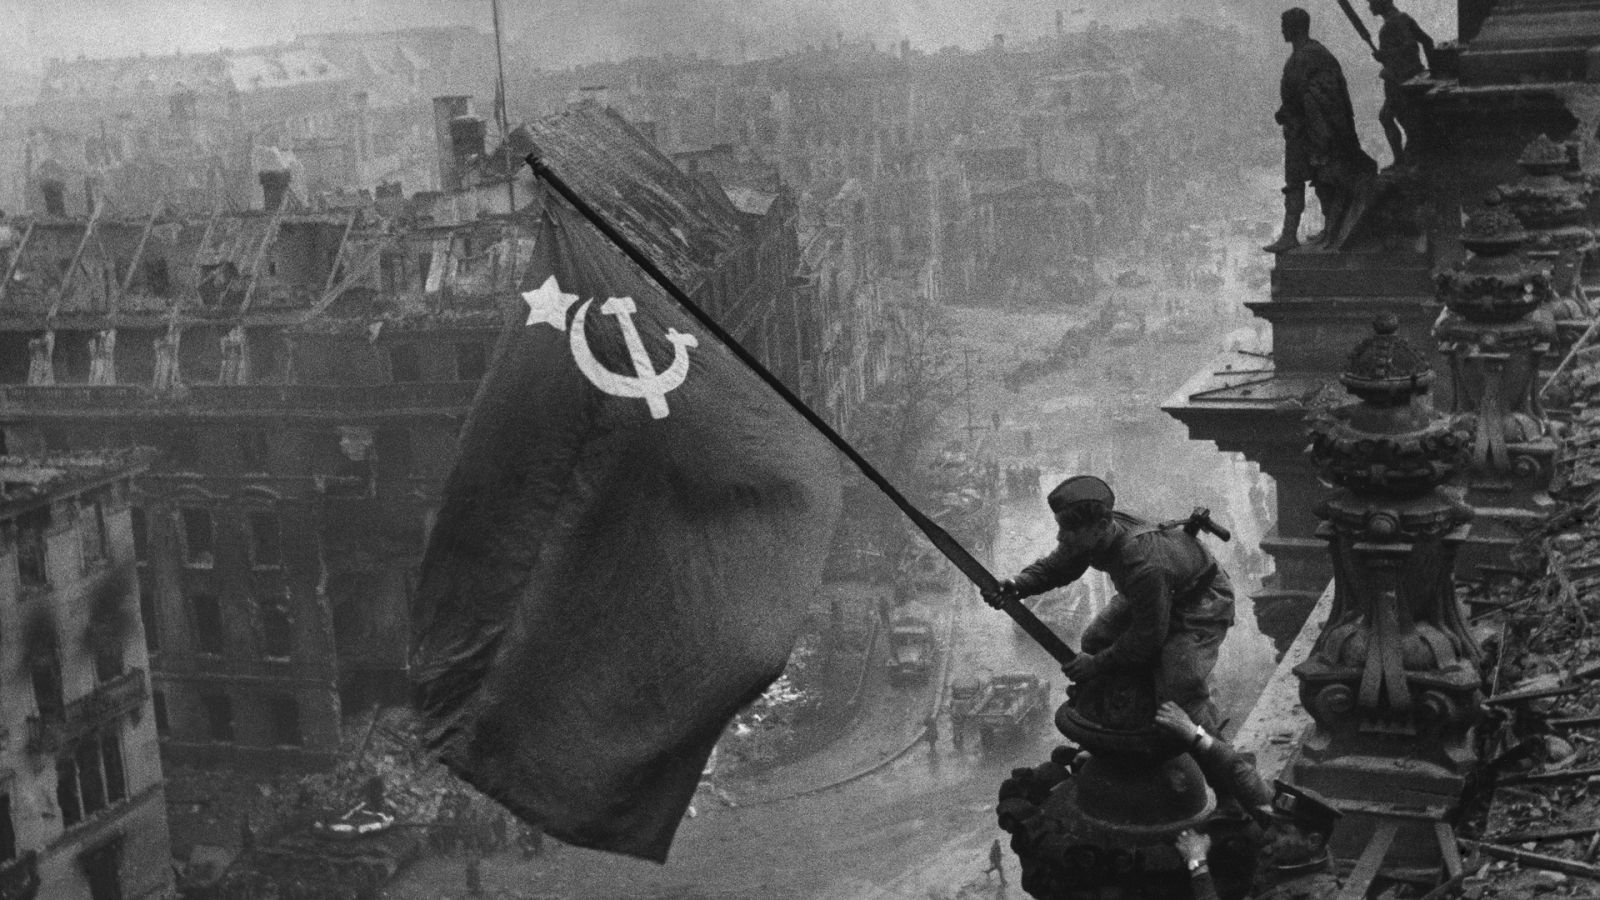 La historia del Ejército Rojo - Episodio 1: El Ejército Rojo. La gran guerra patriótica - Documental en RTVE